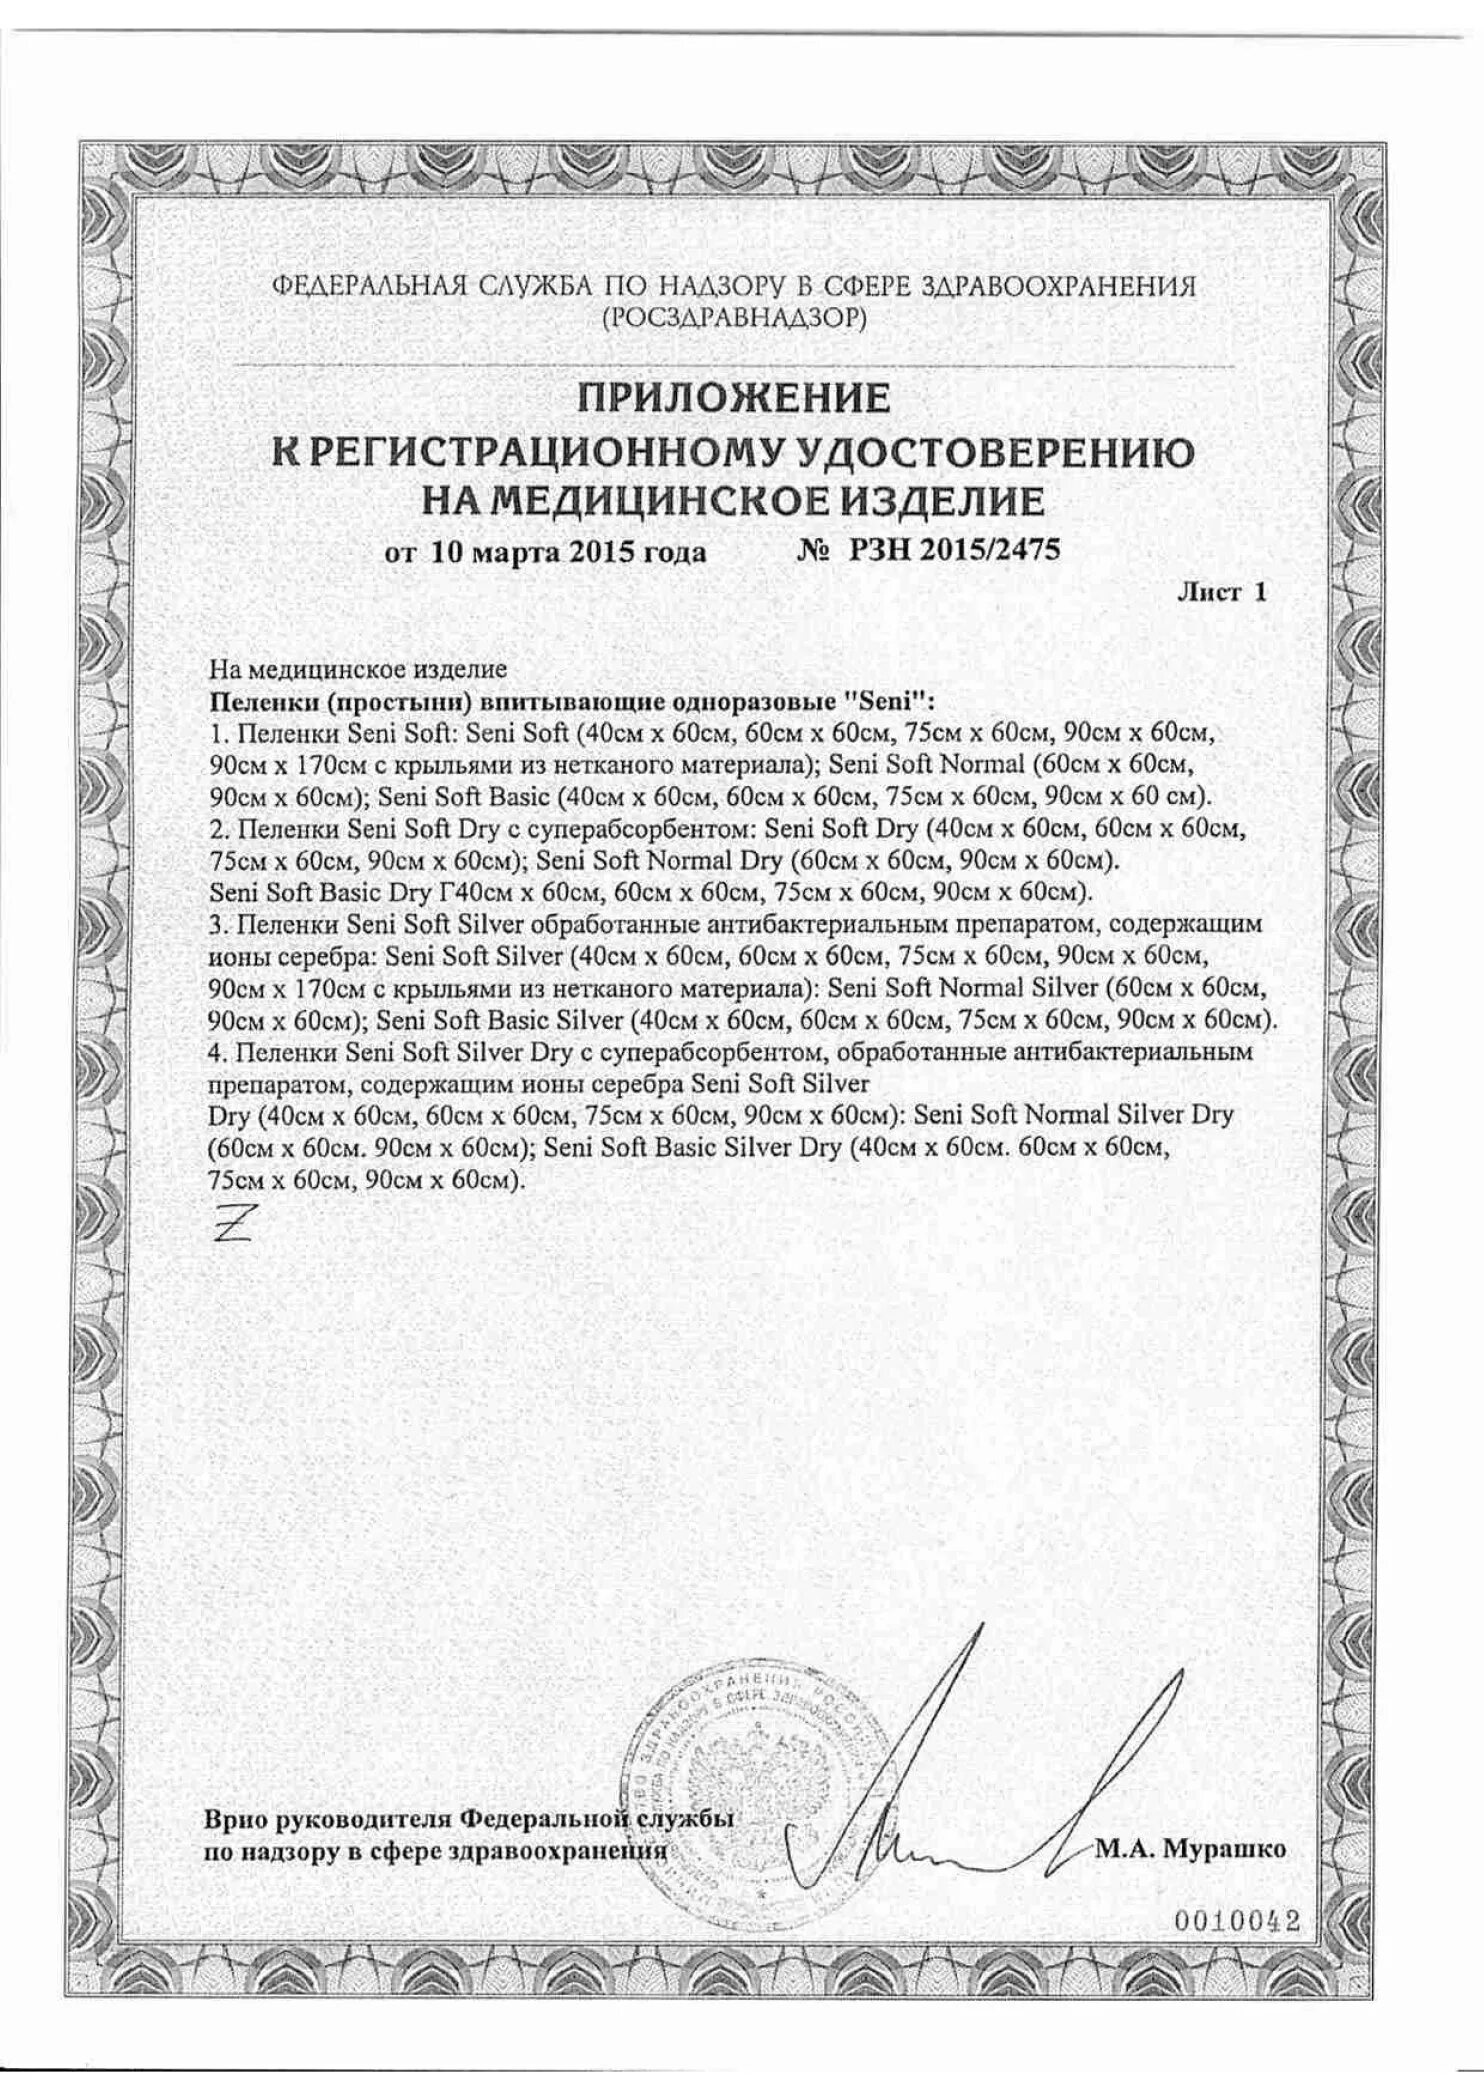 Рзн 2015. Сертификат на простыни одноразовые.